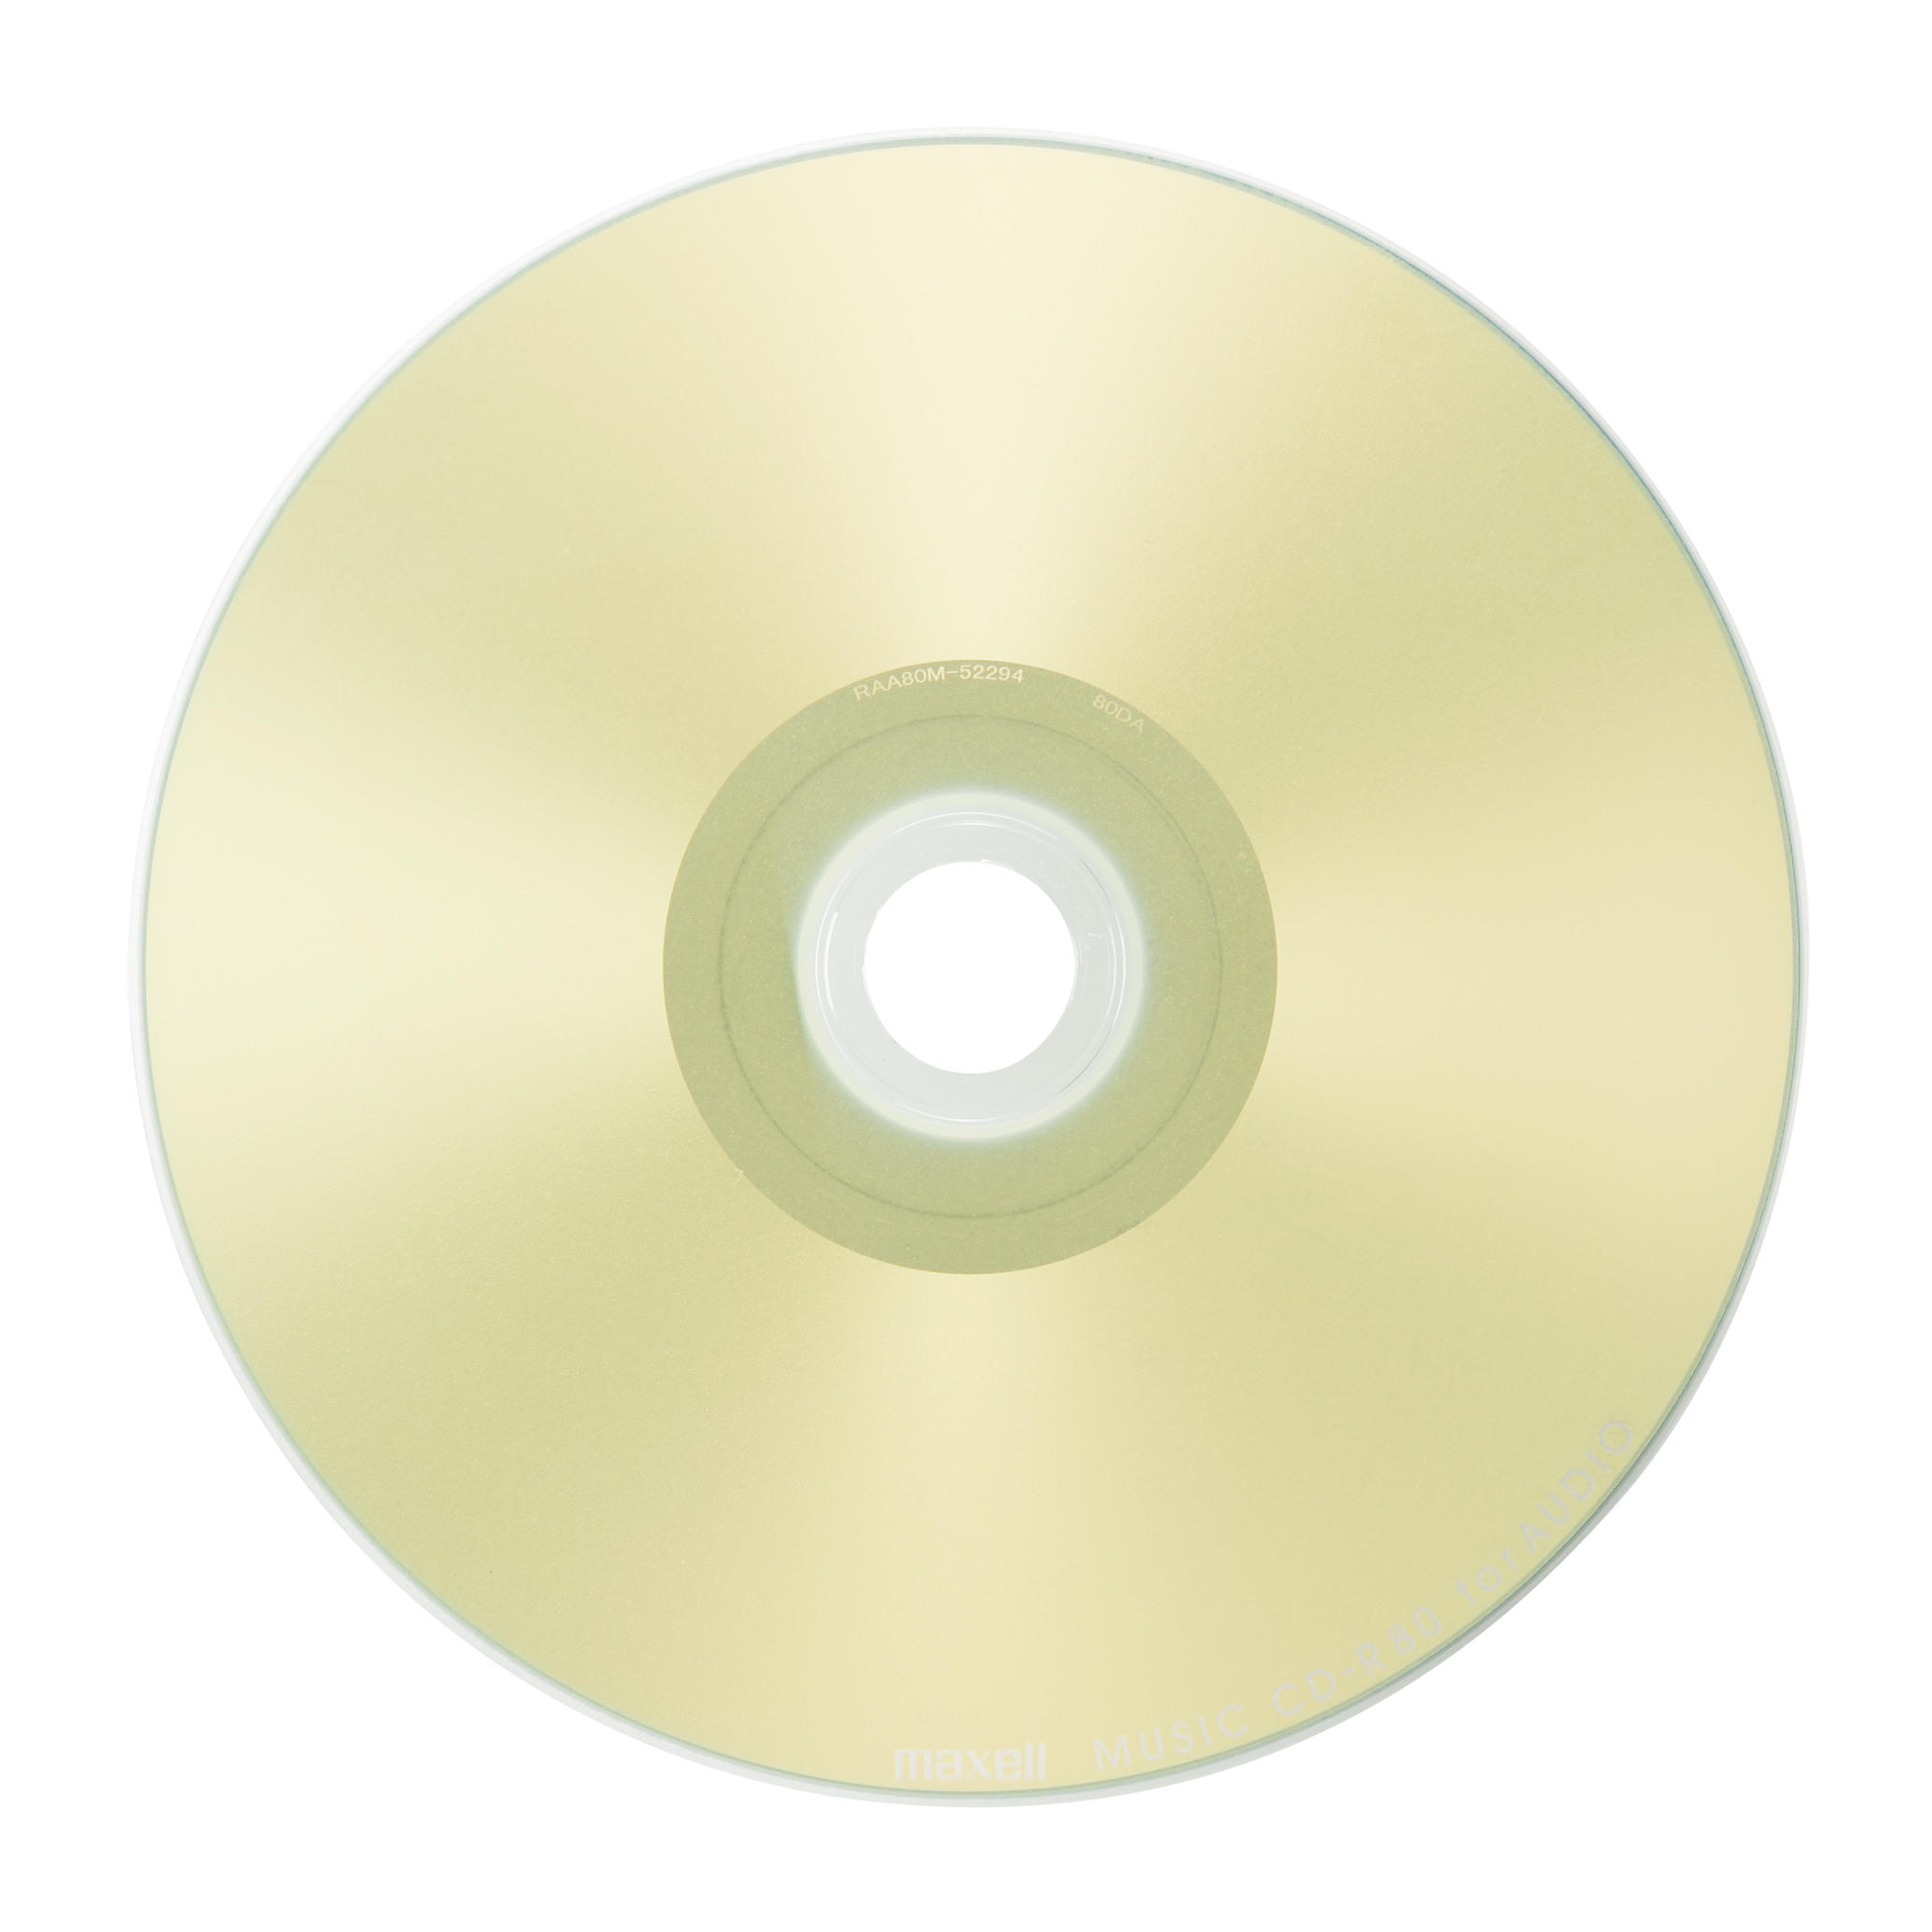 正規品】 maxell 音楽用CD-R インクジェットプリンター対応 Sweet Color Mix Series 80分 10枚パ CDRA80 